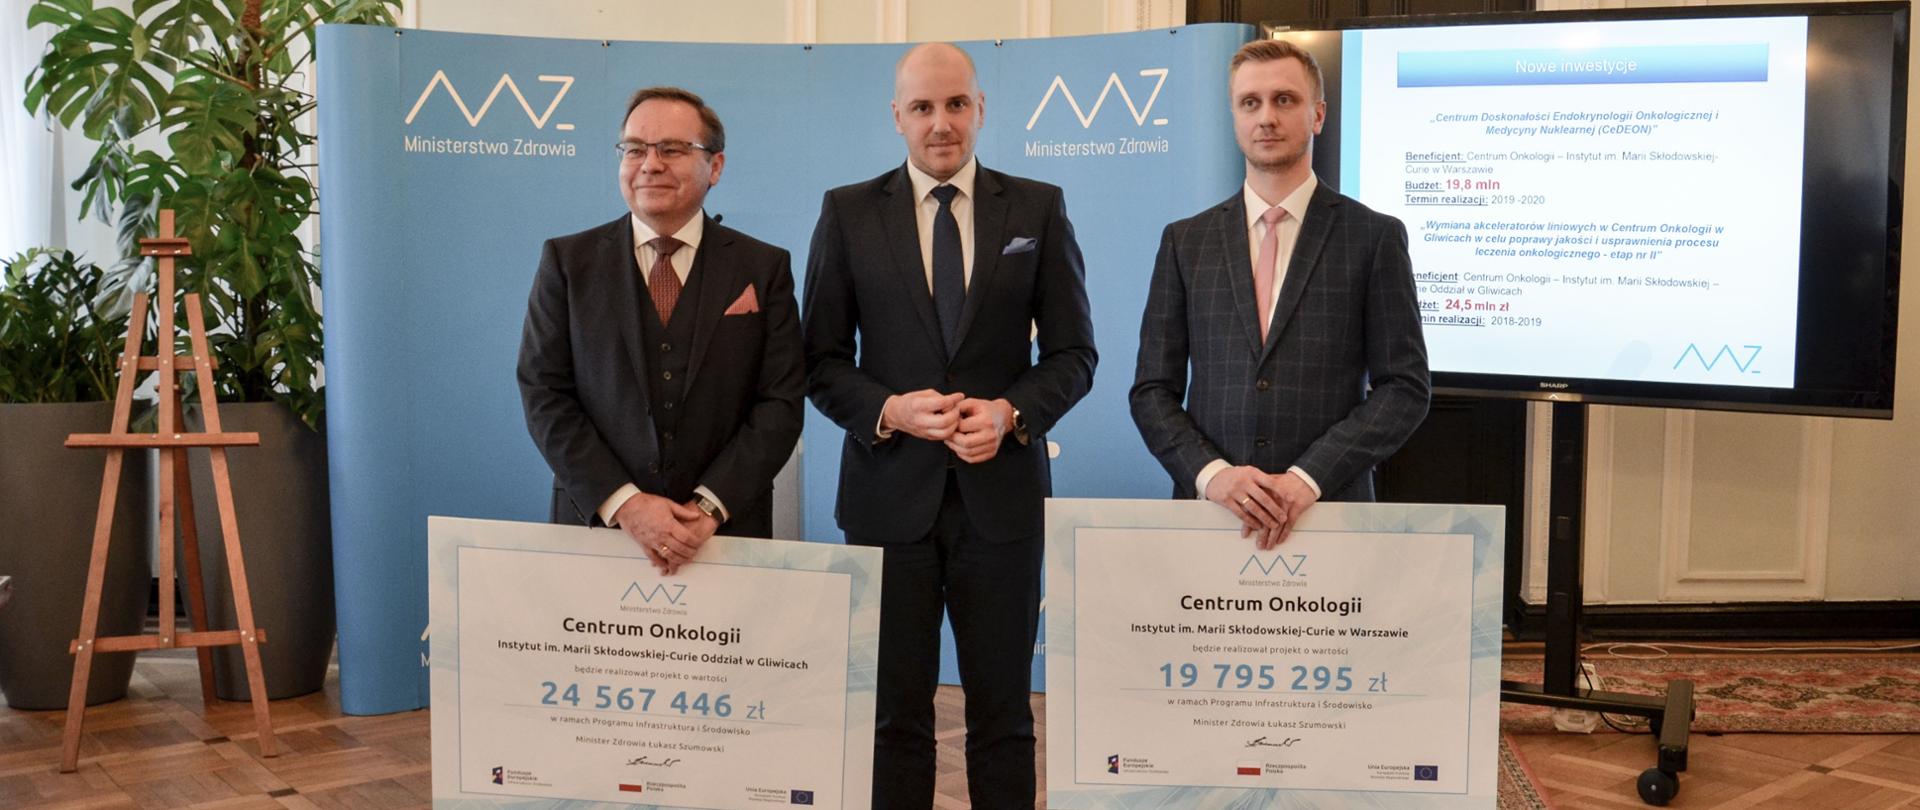 Nowe inwestycje w Centrum Onkologii w Warszawie i Gliwicach